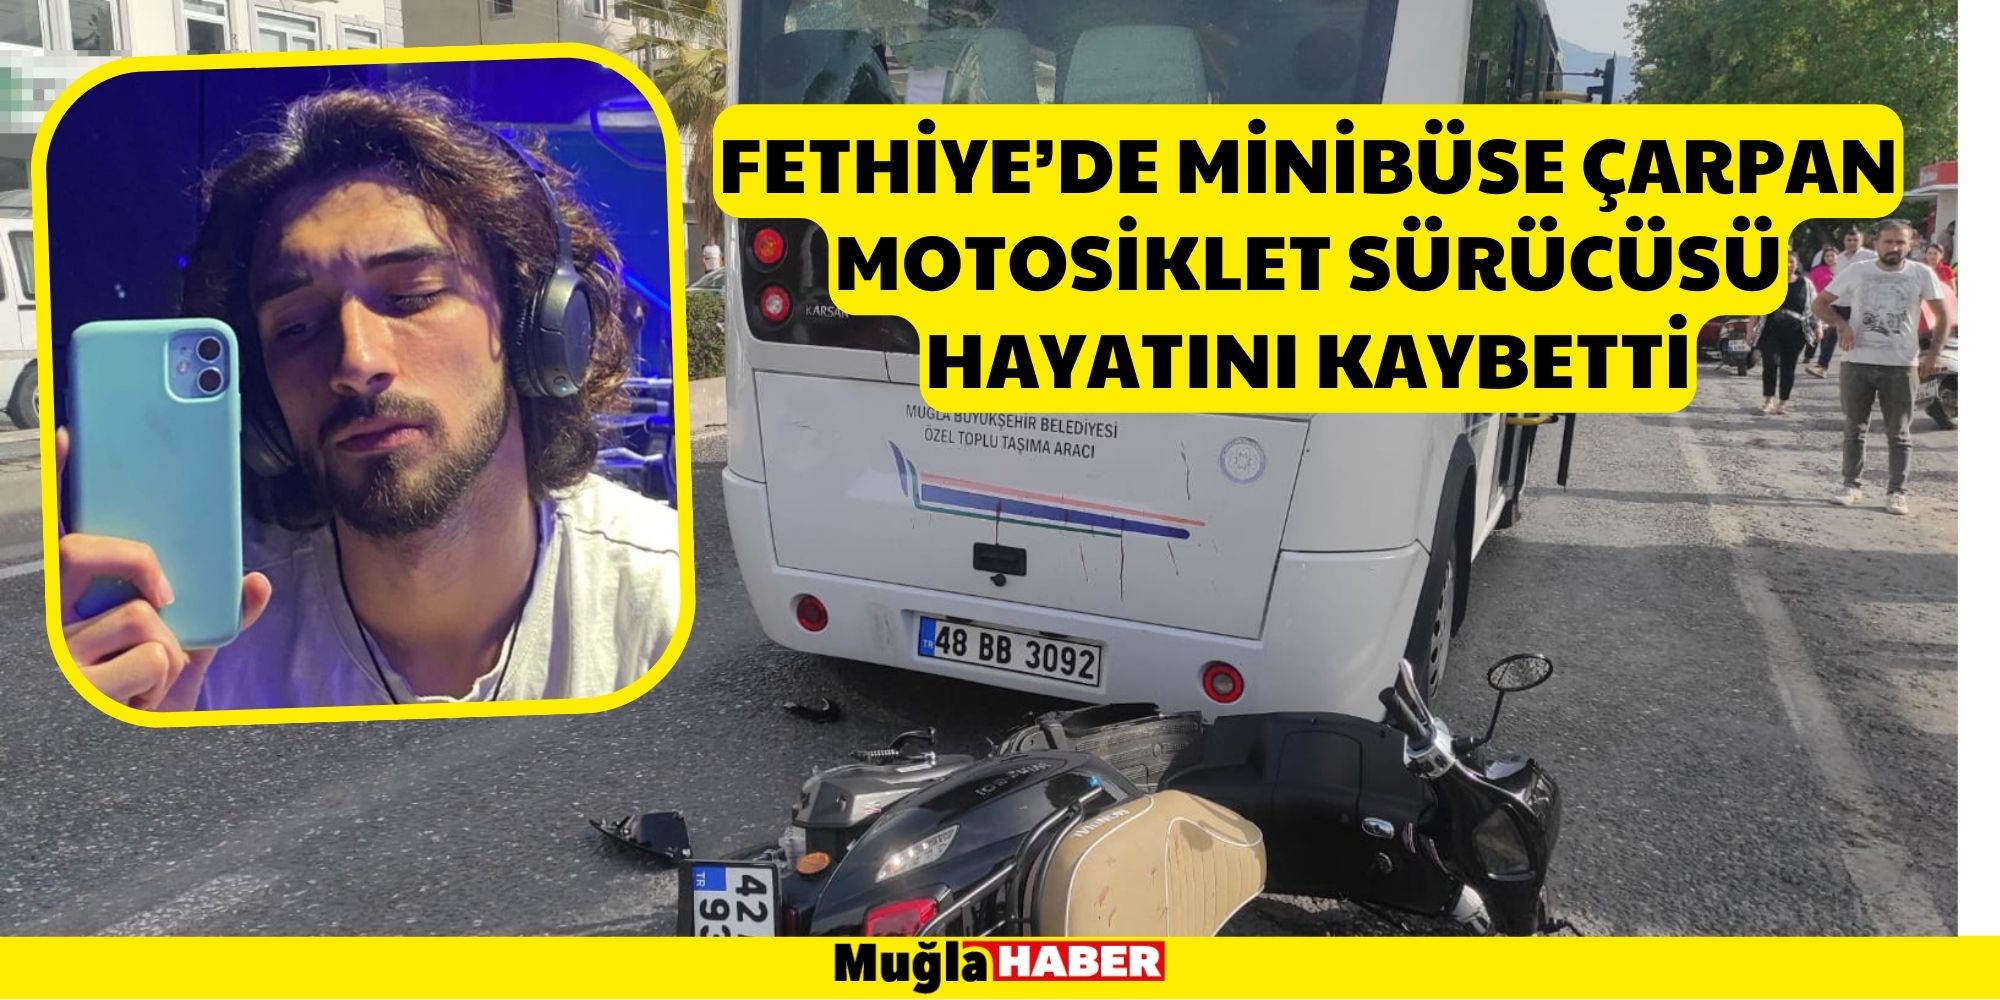 Fethiye’de minibüse çarpan motosiklet sürücüsü hayatını kaybetti